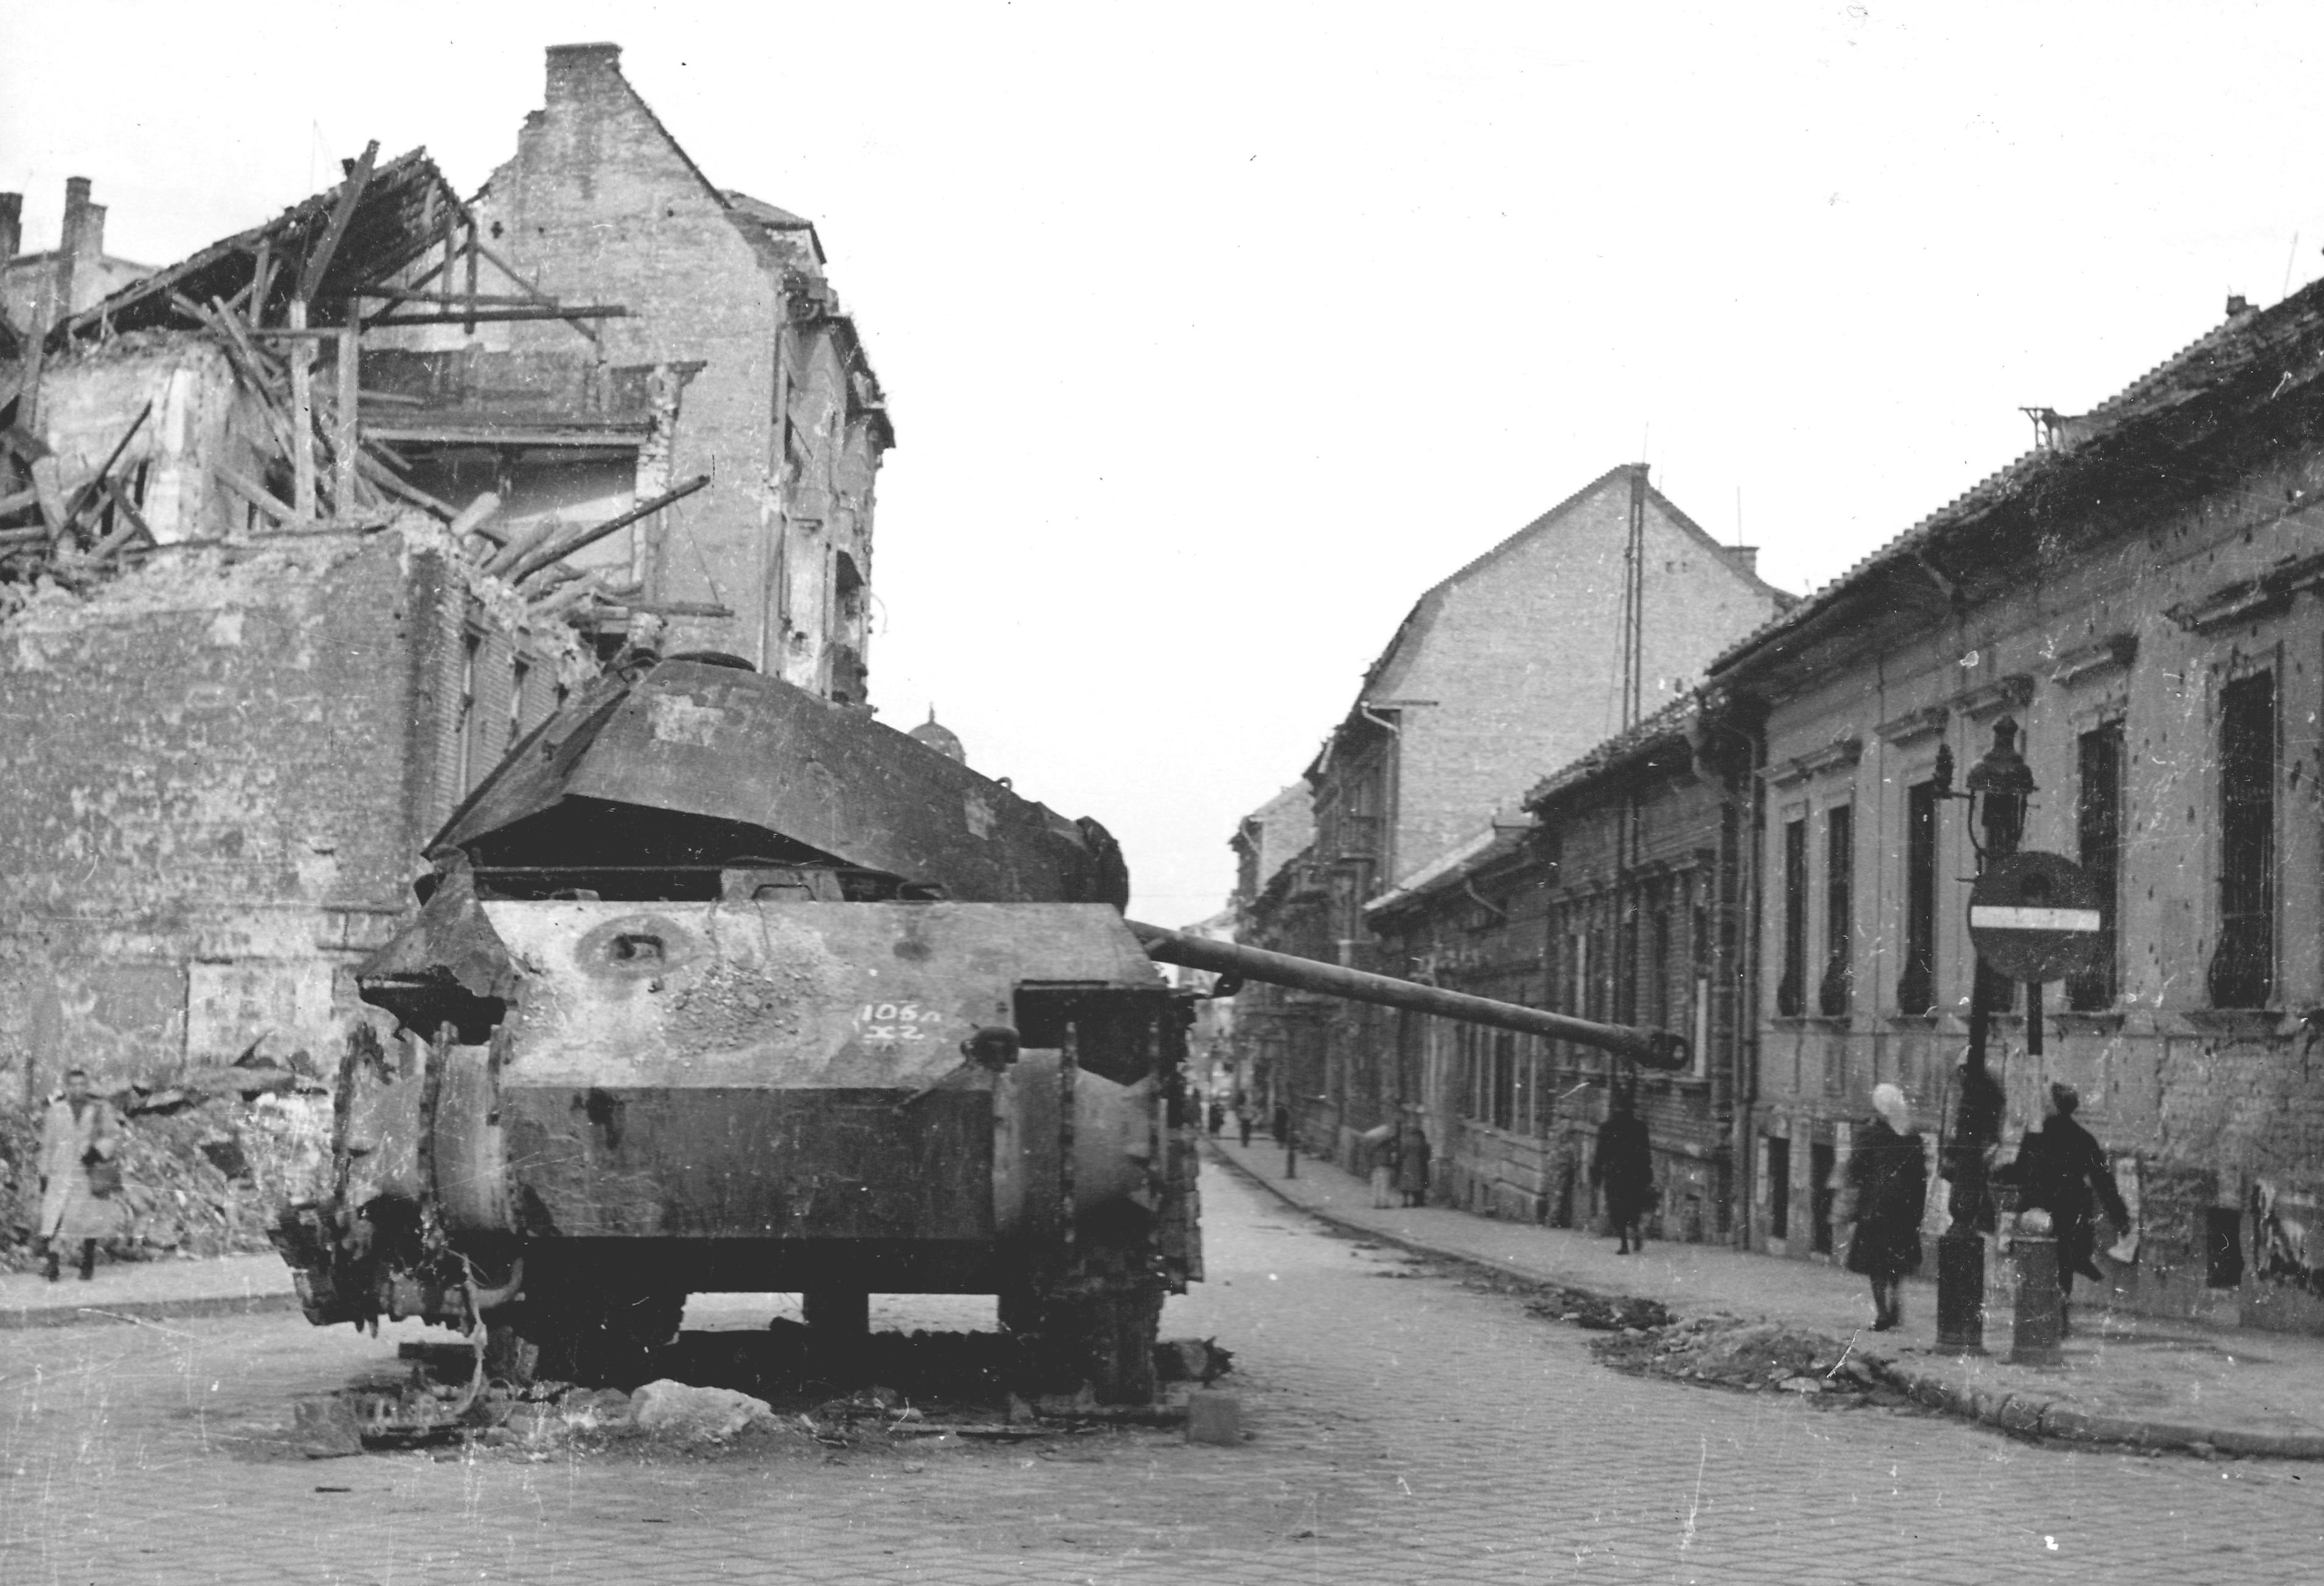 штурм будапешта 1945